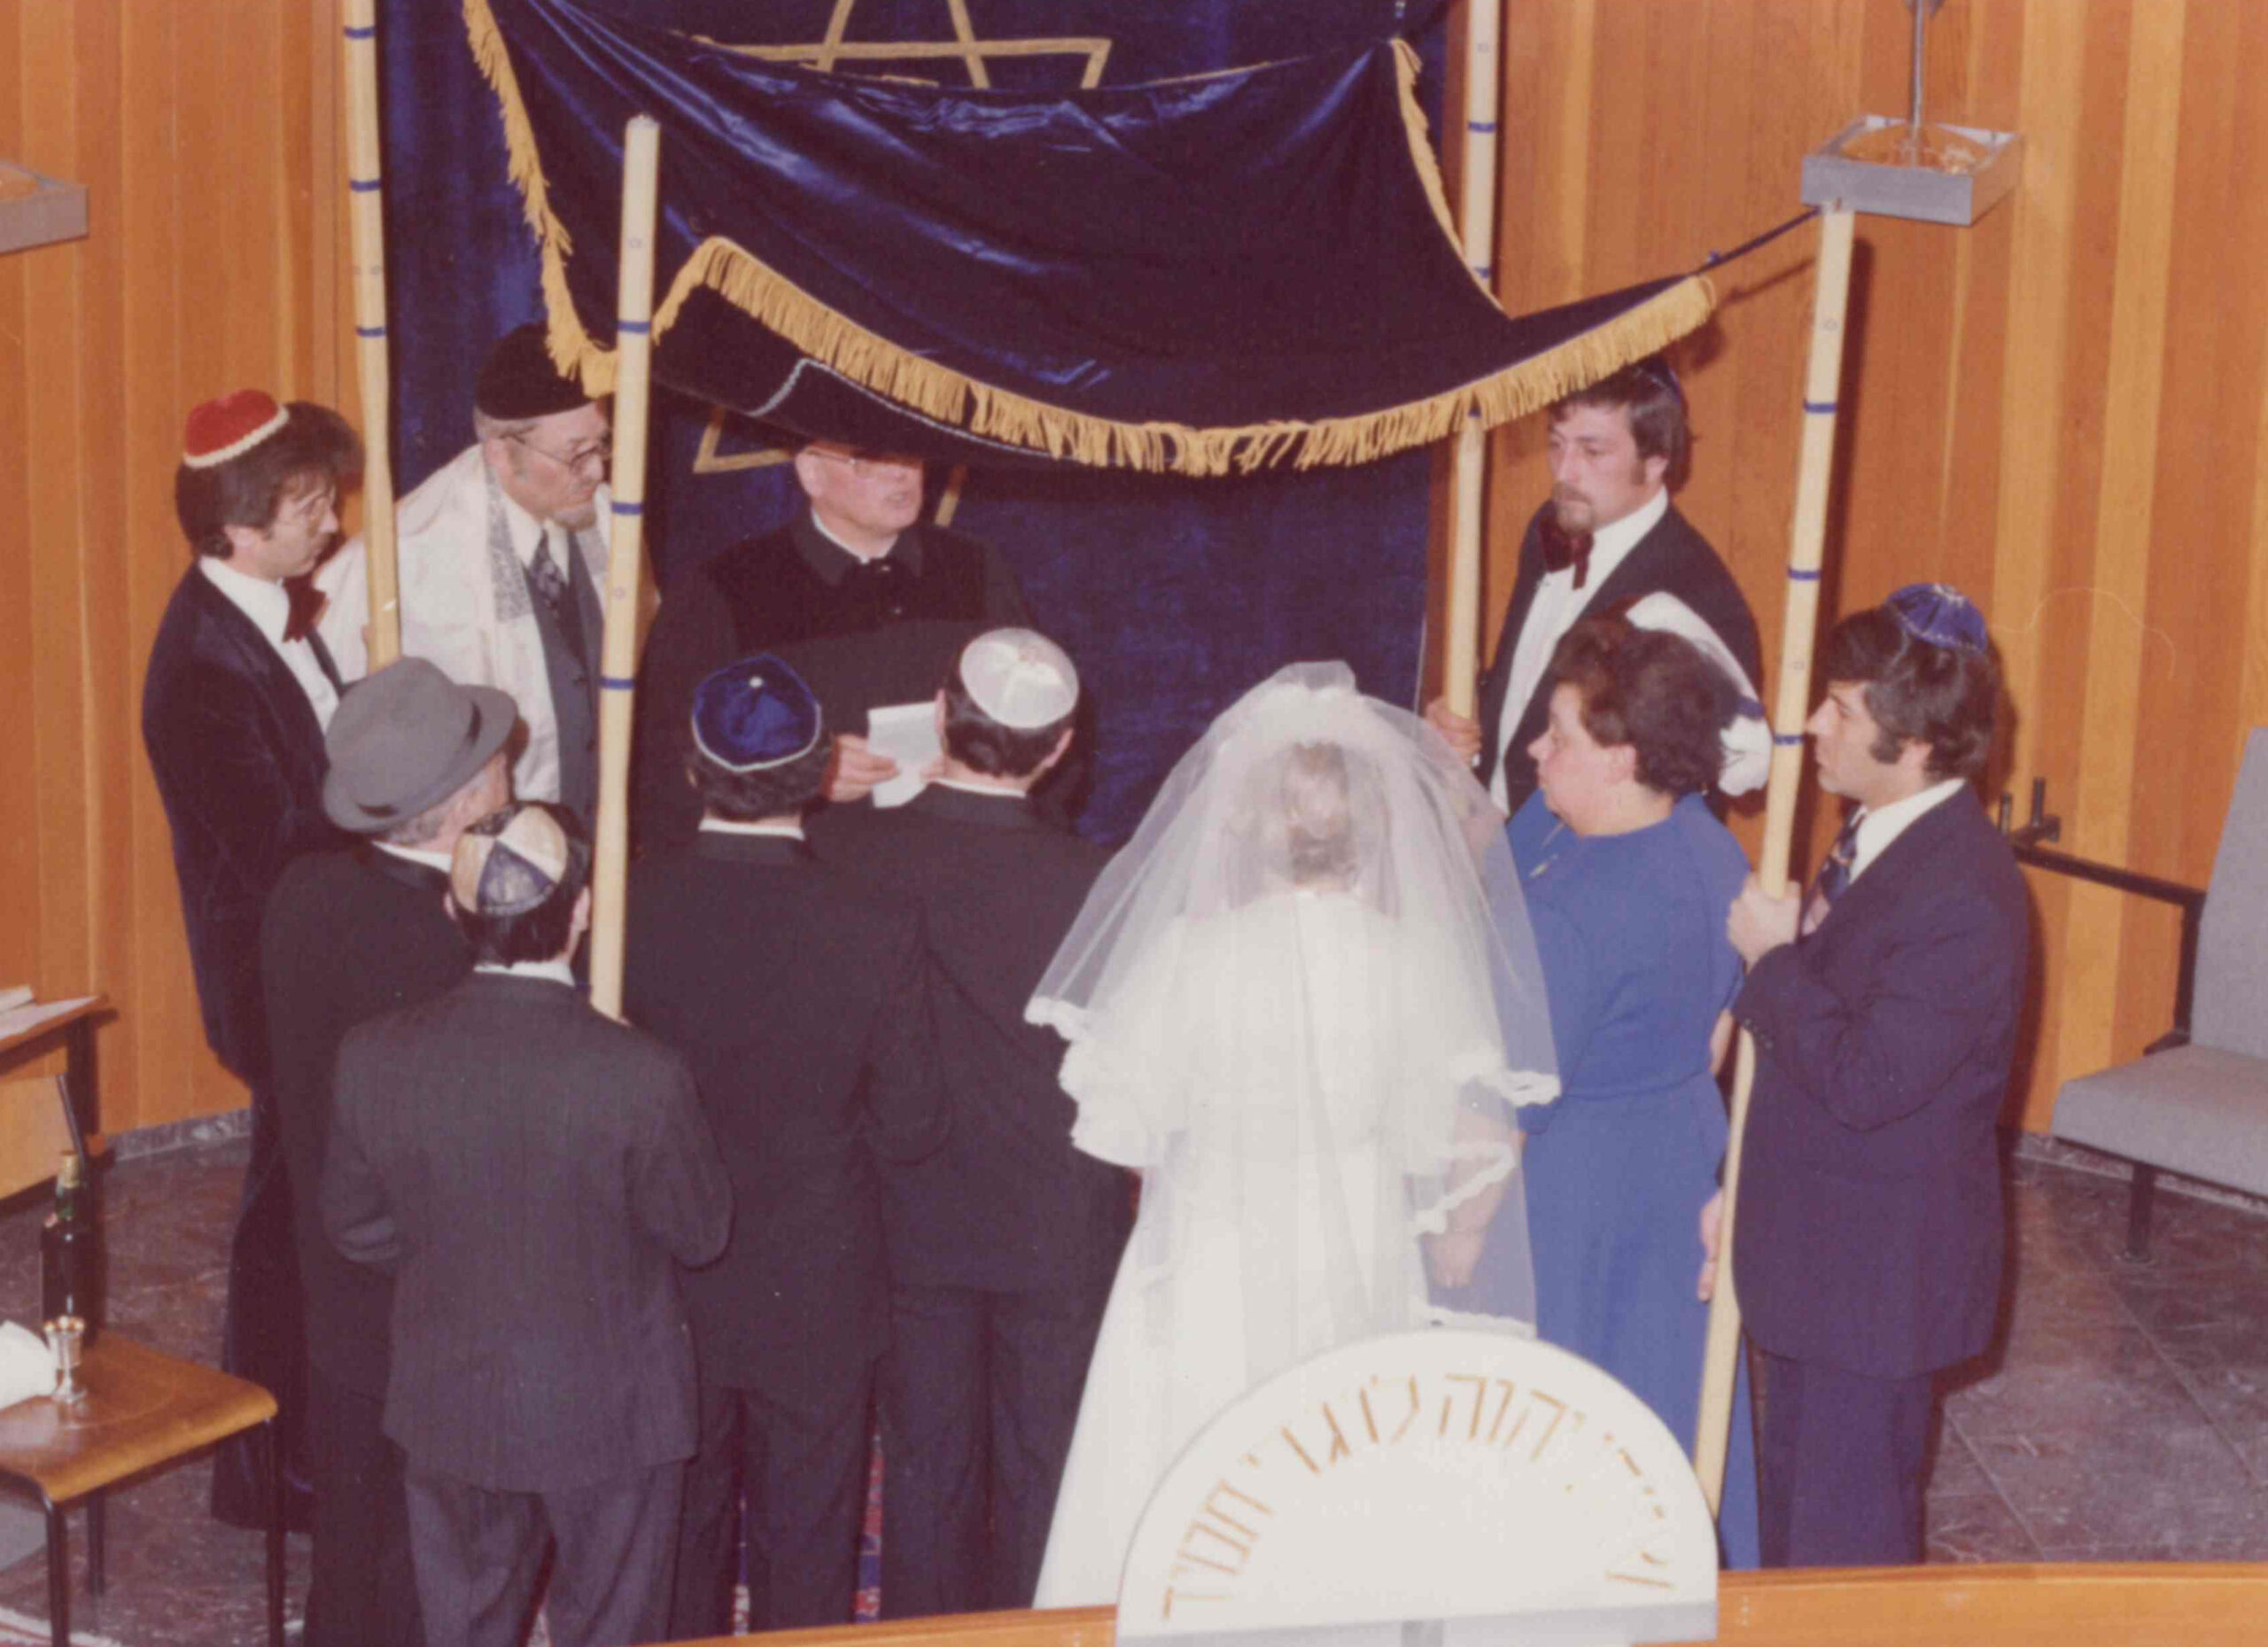 Un mariage dans la communauté juive de Wiesbaden. Collection de la communauté juive de Wiesbaden